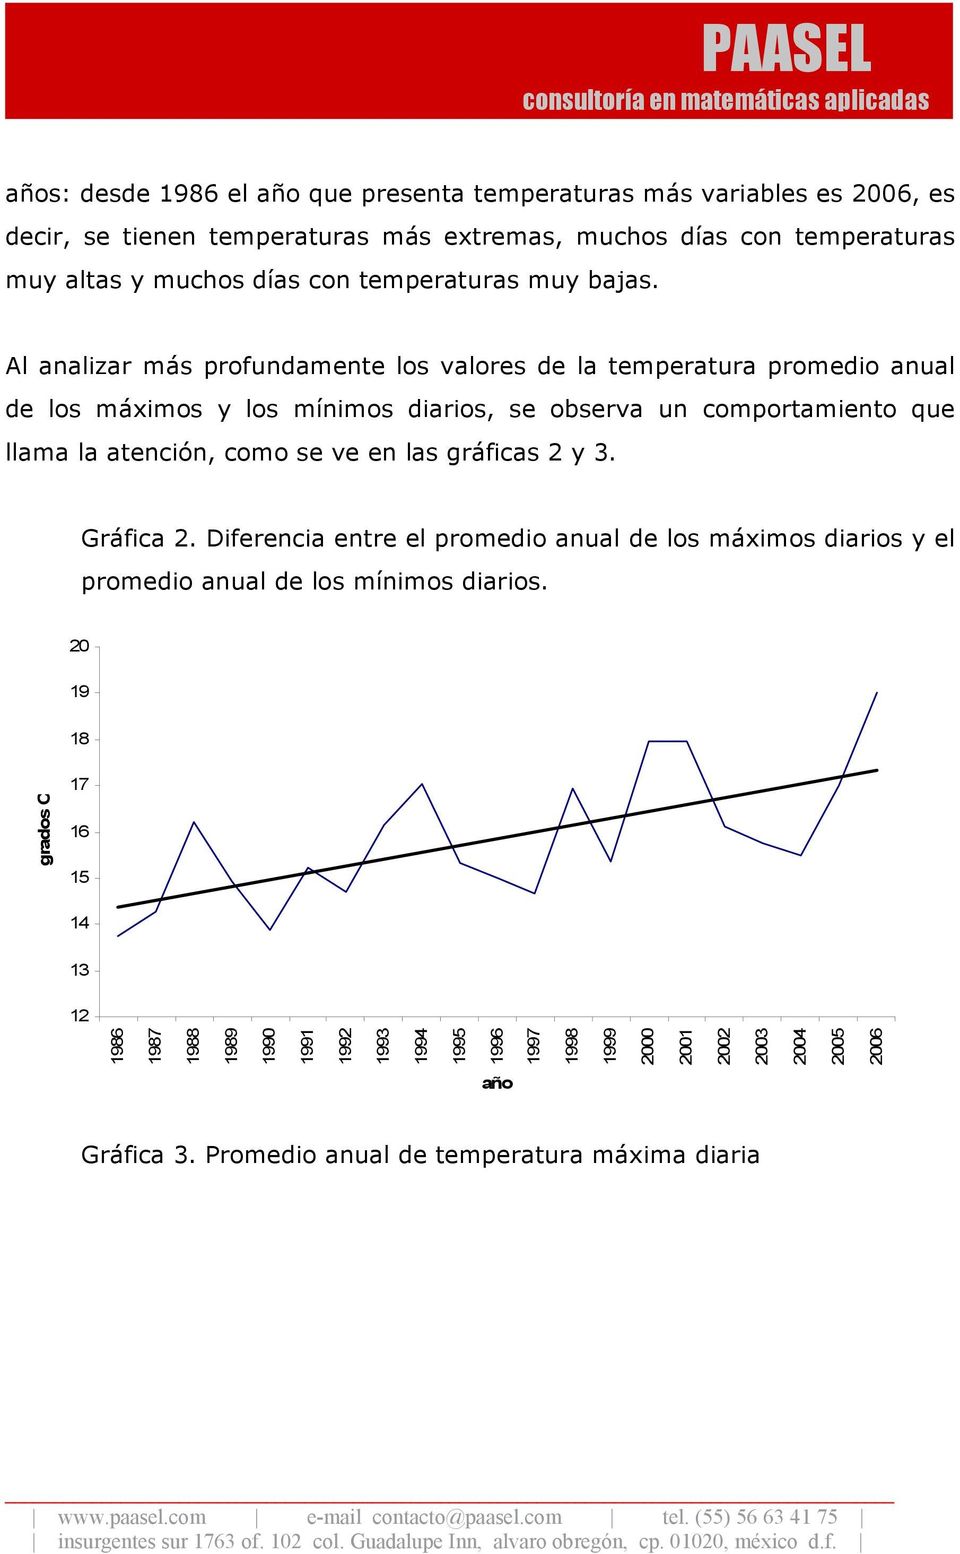 Al analizar más profundamente los valores de la temperatura promedio anual de los máximos y los mínimos diarios, se observa un comportamiento que llama la atención, como se ve